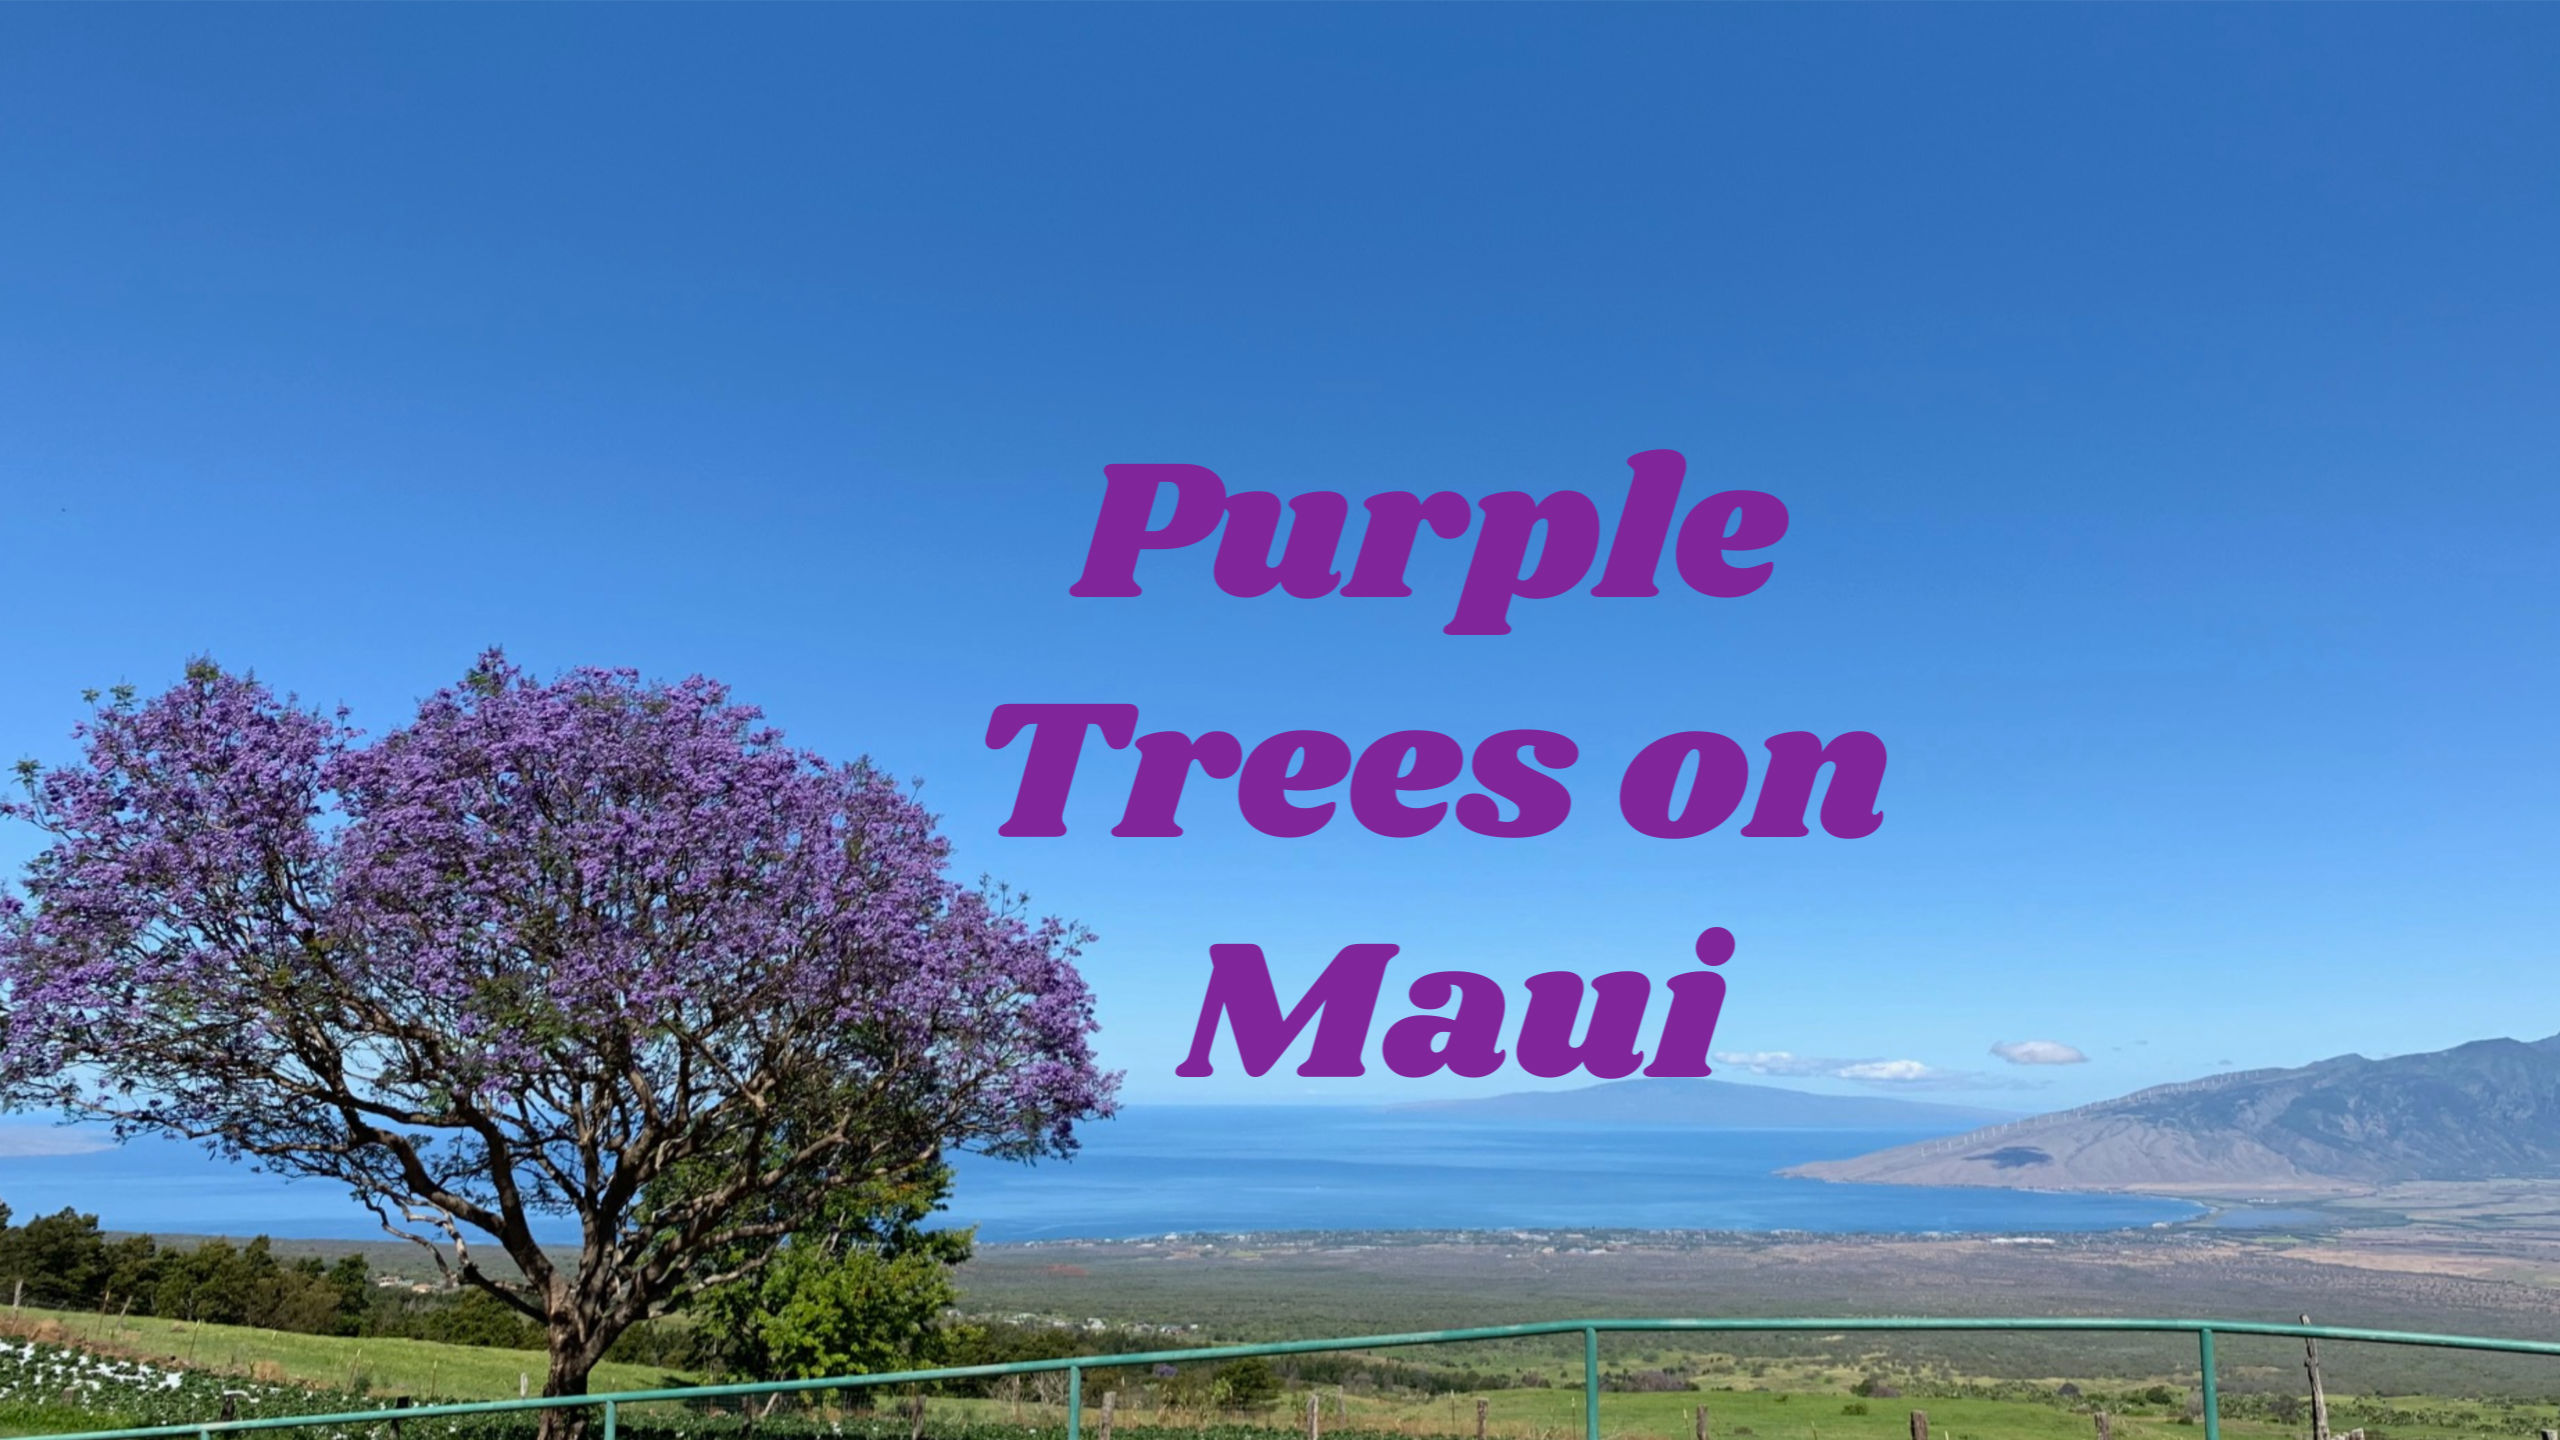 The Purple Trees on Maui Hawaii